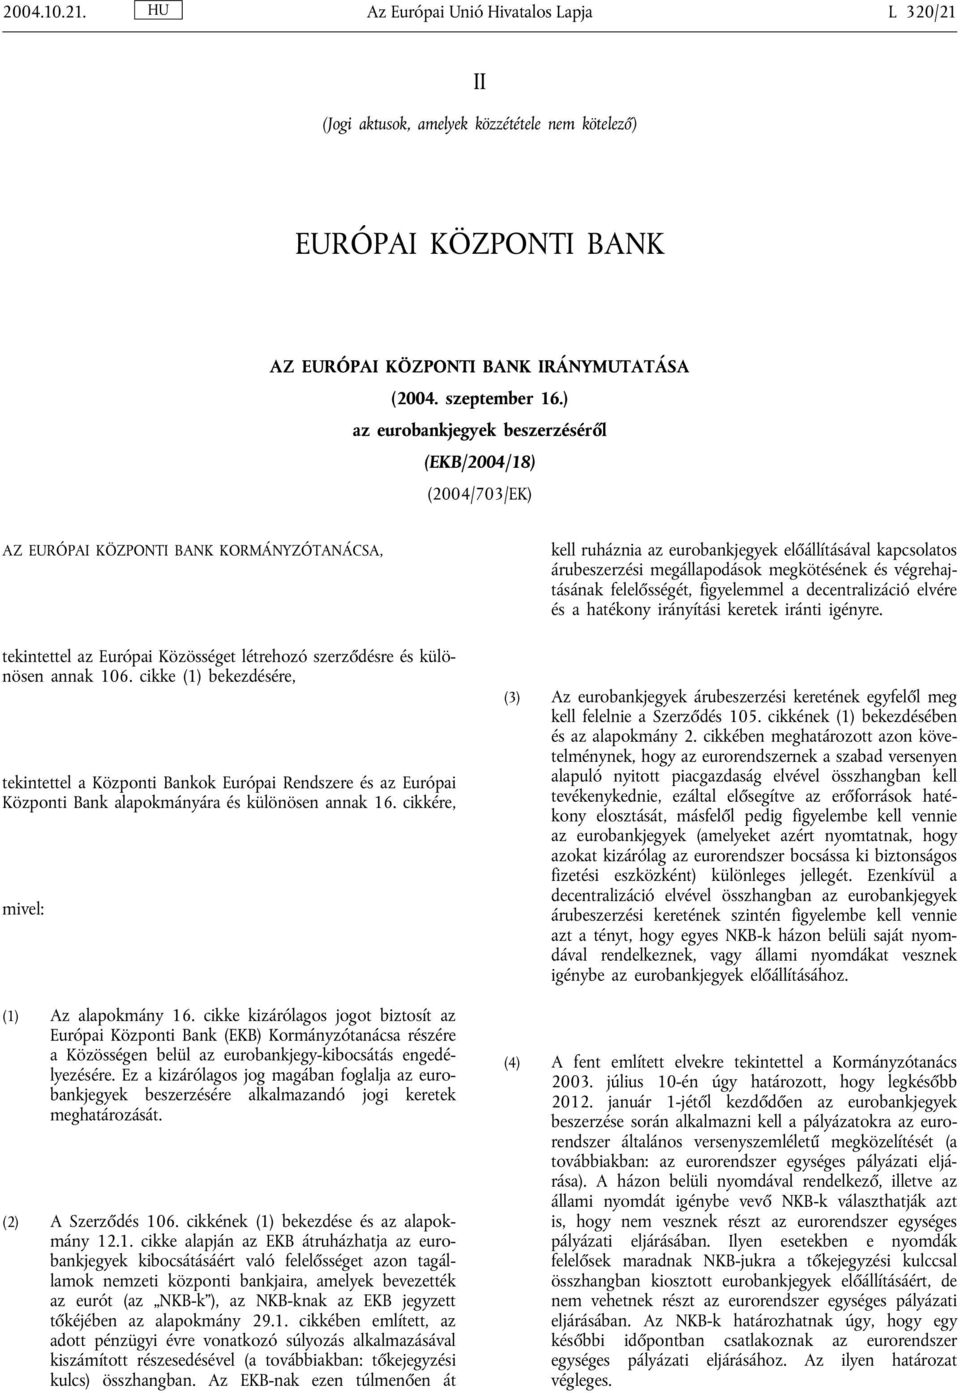 cikke (1) bekezdésére, tekintettel a Központi Bankok Európai Rendszere és az Európai Központi Bank alapokmányára és különösen annak 16. cikkére, mivel: (1) Az alapokmány 16.